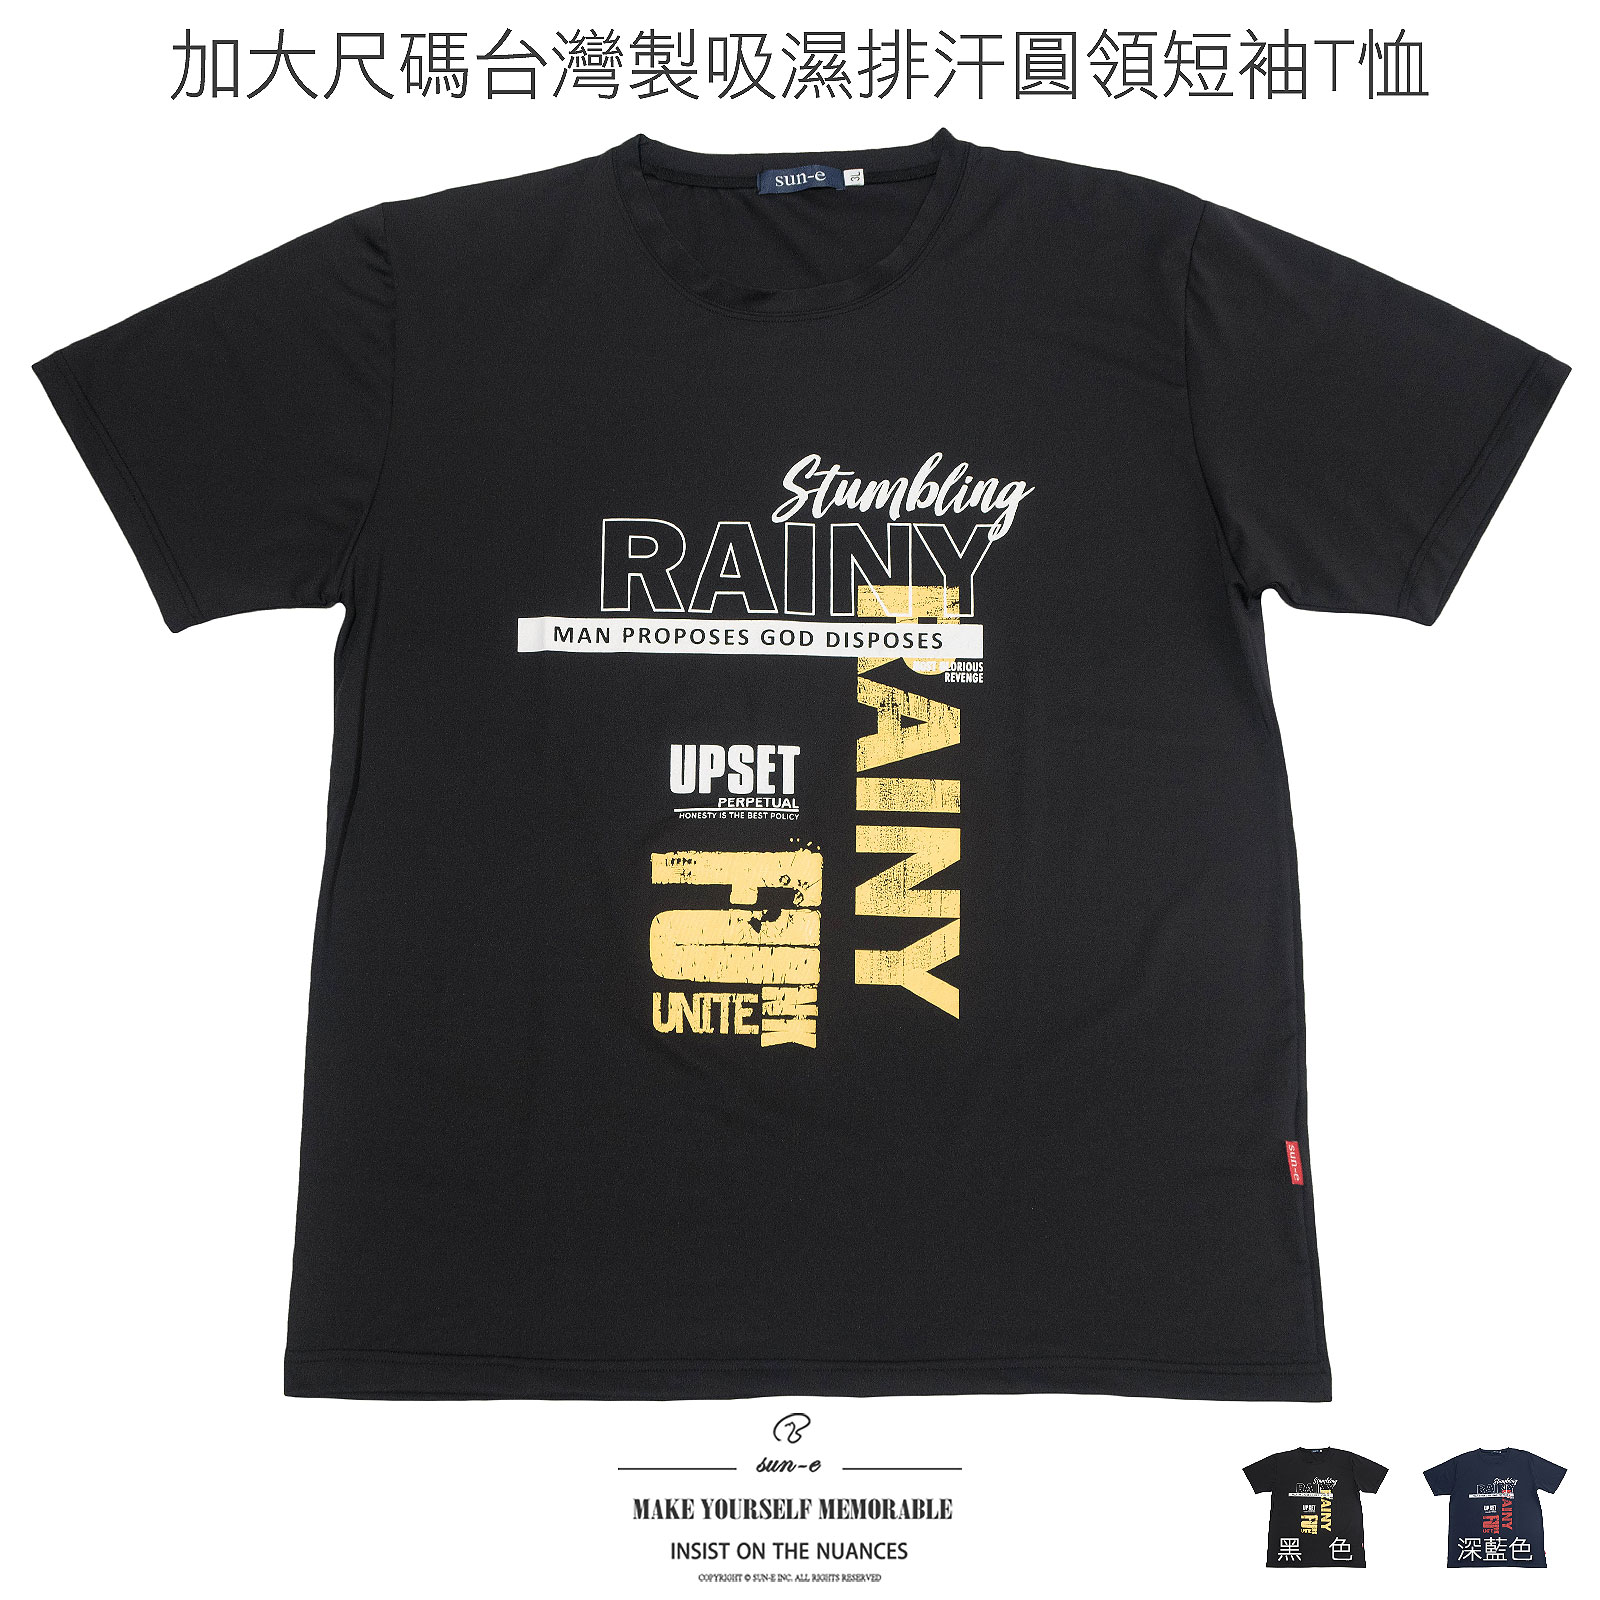 加大尺碼T恤 吸濕排汗T恤 台灣製T恤 超彈力短袖T恤 透氣速乾運動T恤 圓領T恤 英文字T恤 大尺碼男裝 機能性布料短袖上衣 Big And Tall T-shirts Moisture Wicking T-shirt Made In Taiwan T-shirts Short Sleeve T-shirts Crew Neck T-Shirts(310-3993-08)深藍色、(310-3993-21)黑色 3L 5L (胸圍:50~57英吋 / 127~145公分) 男 [實體店面保障] sun-e